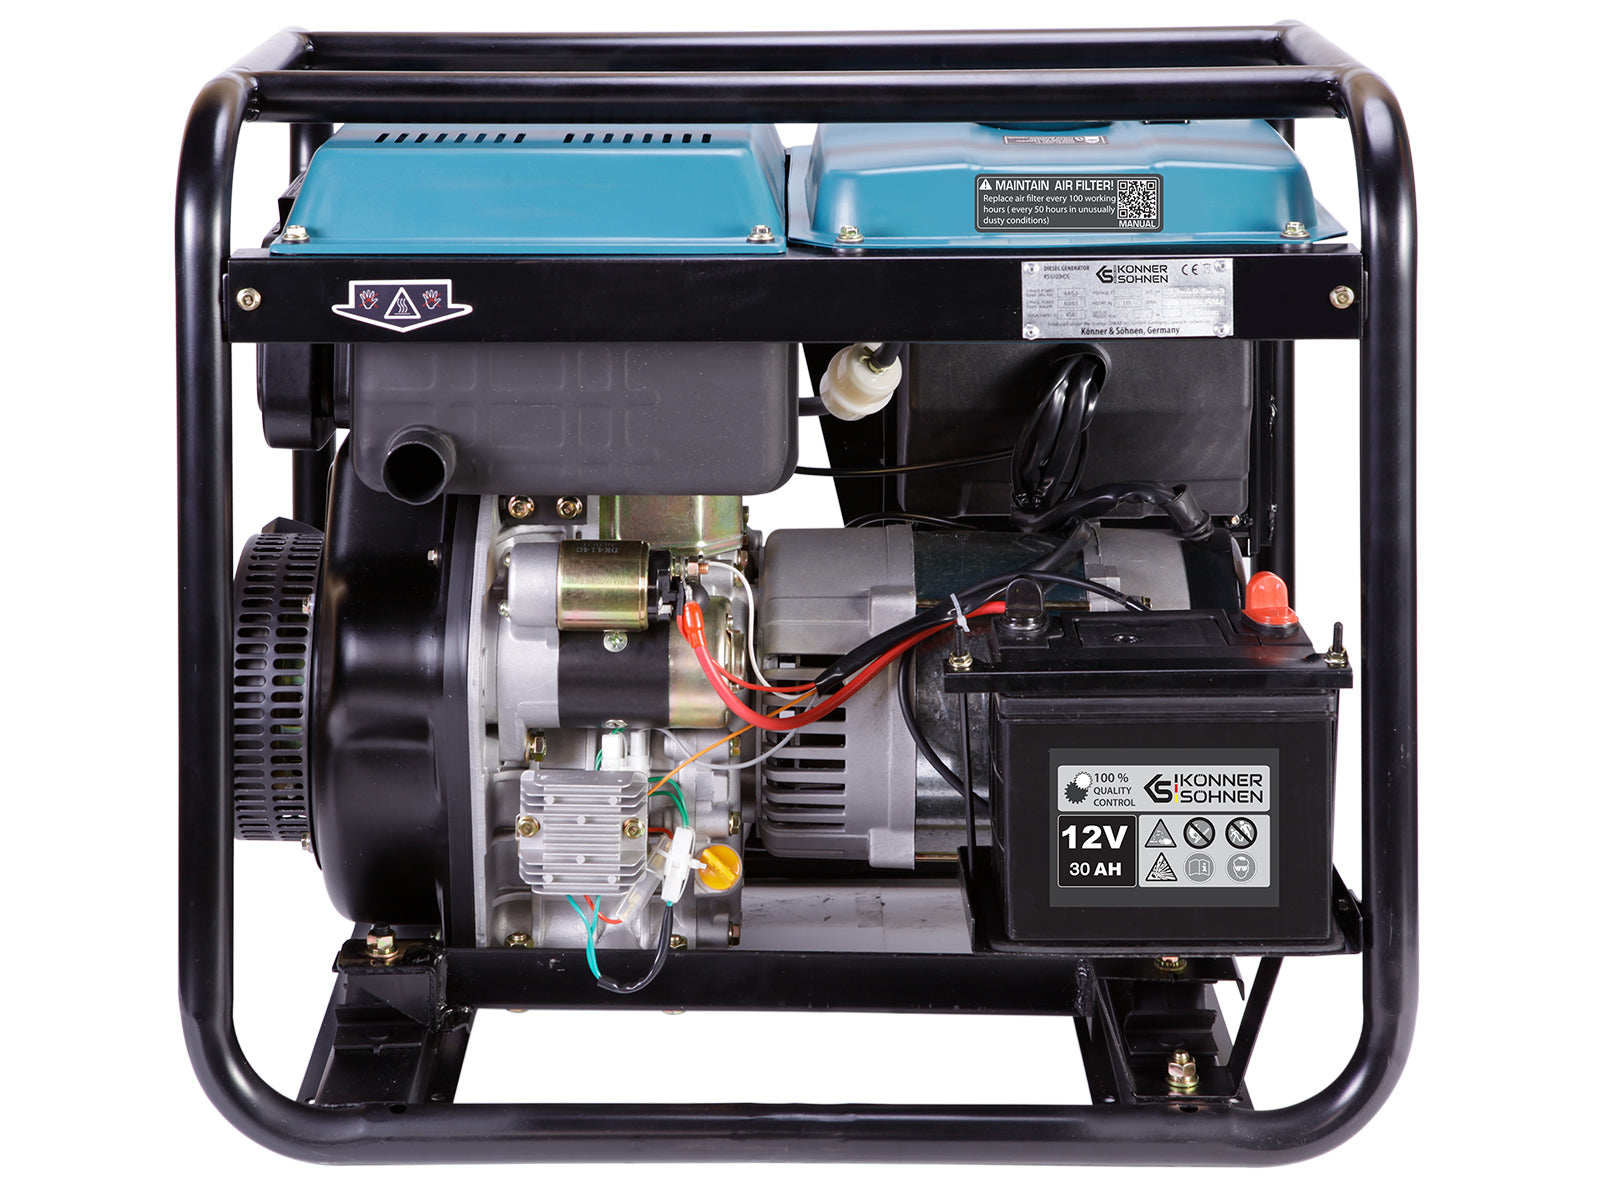 Дизельний генератор KS 8100HDE-1/3 ATSR (EURO V)